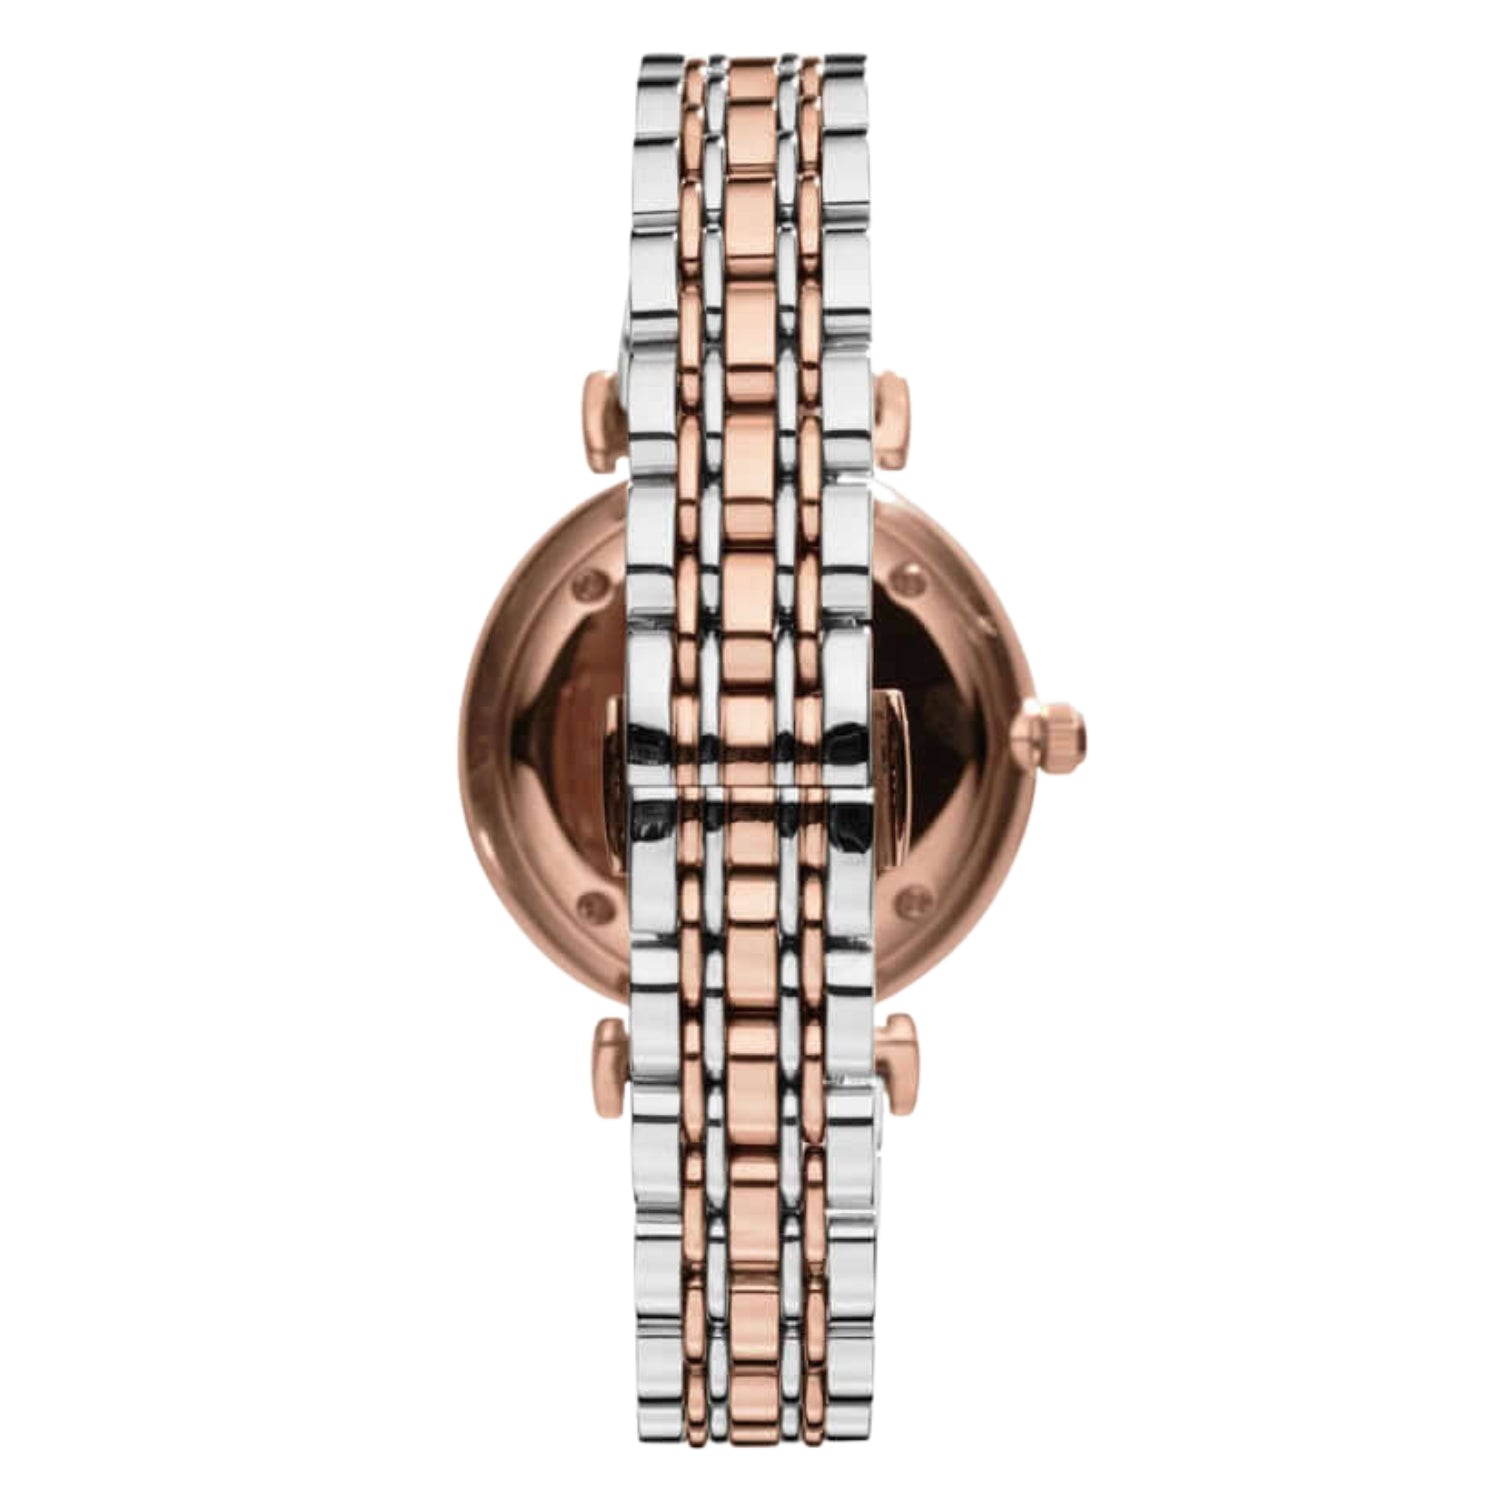 Emporio Armani AR1840 Ladies Rose Gold Watch Voucher - Wowcher